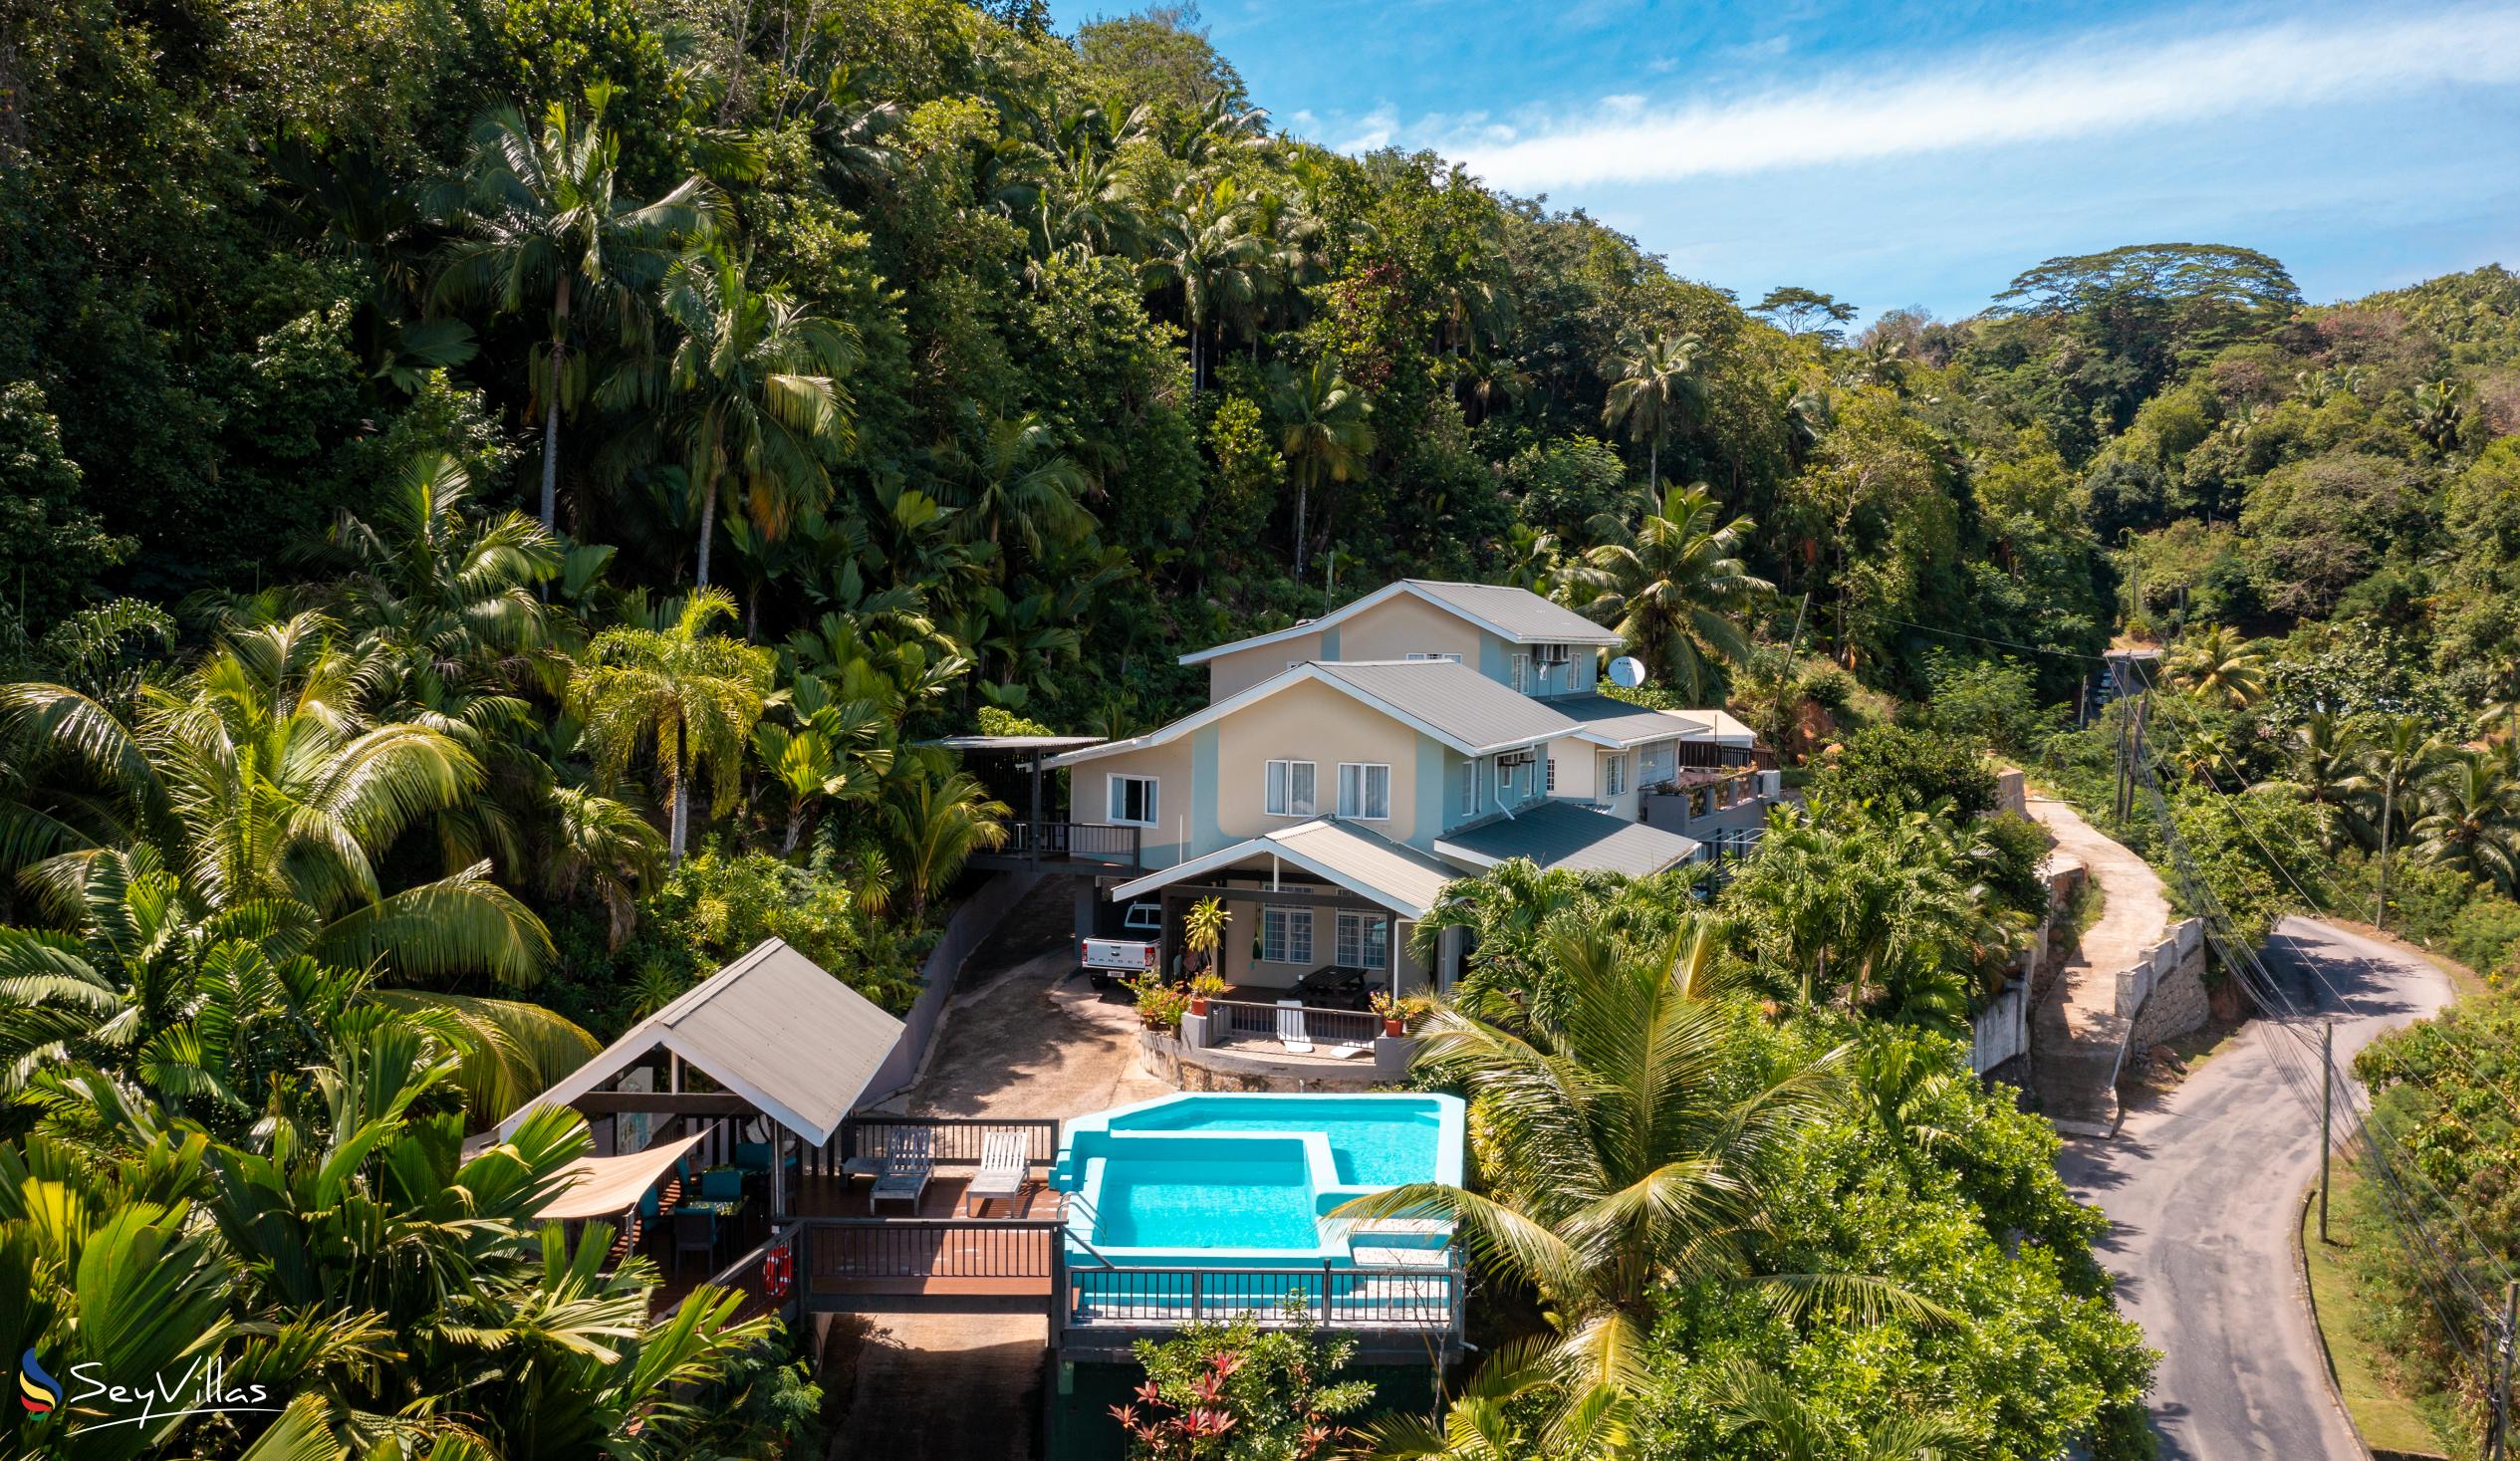 Photo 1: Stephna Residence - Outdoor area - Mahé (Seychelles)